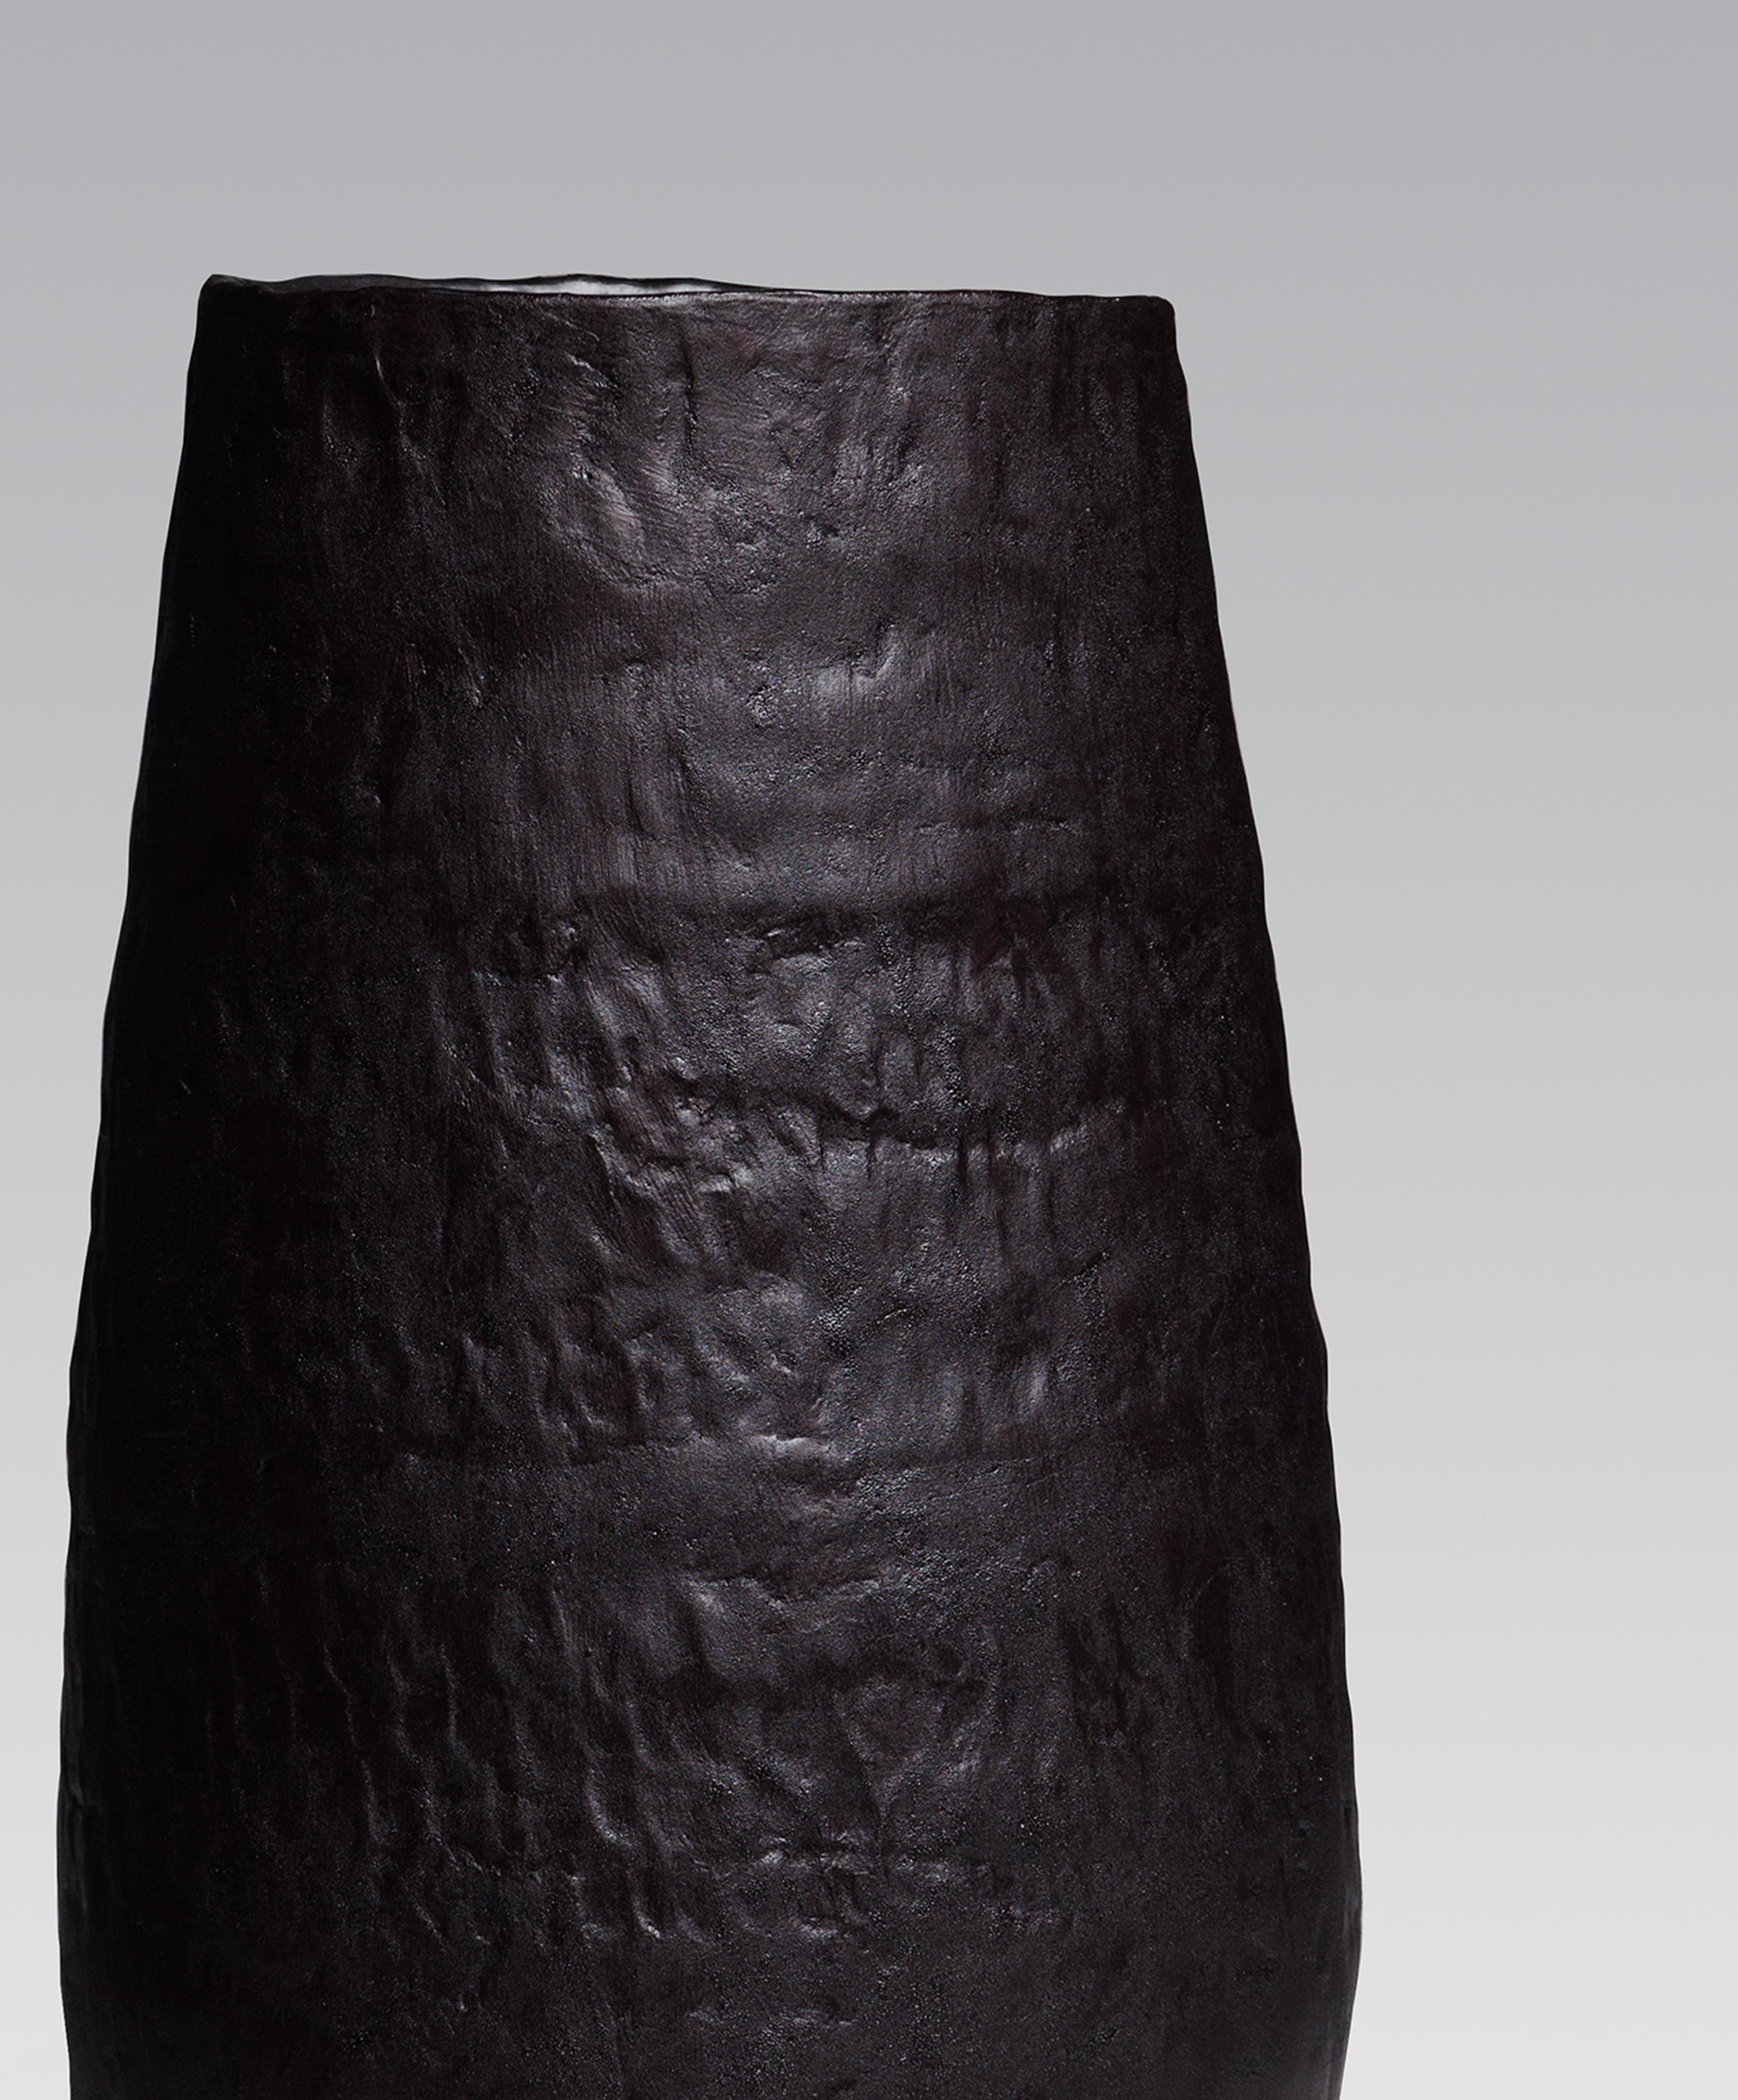 ObscuroBV05 Le grand vase conçu et produit par l'artiste canadienne Pascale Girardin présente un corps en grès partiellement émaillé. La structure entière est faite à la main. Les empreintes de mains sculptées dans le corps sont remarquables sur